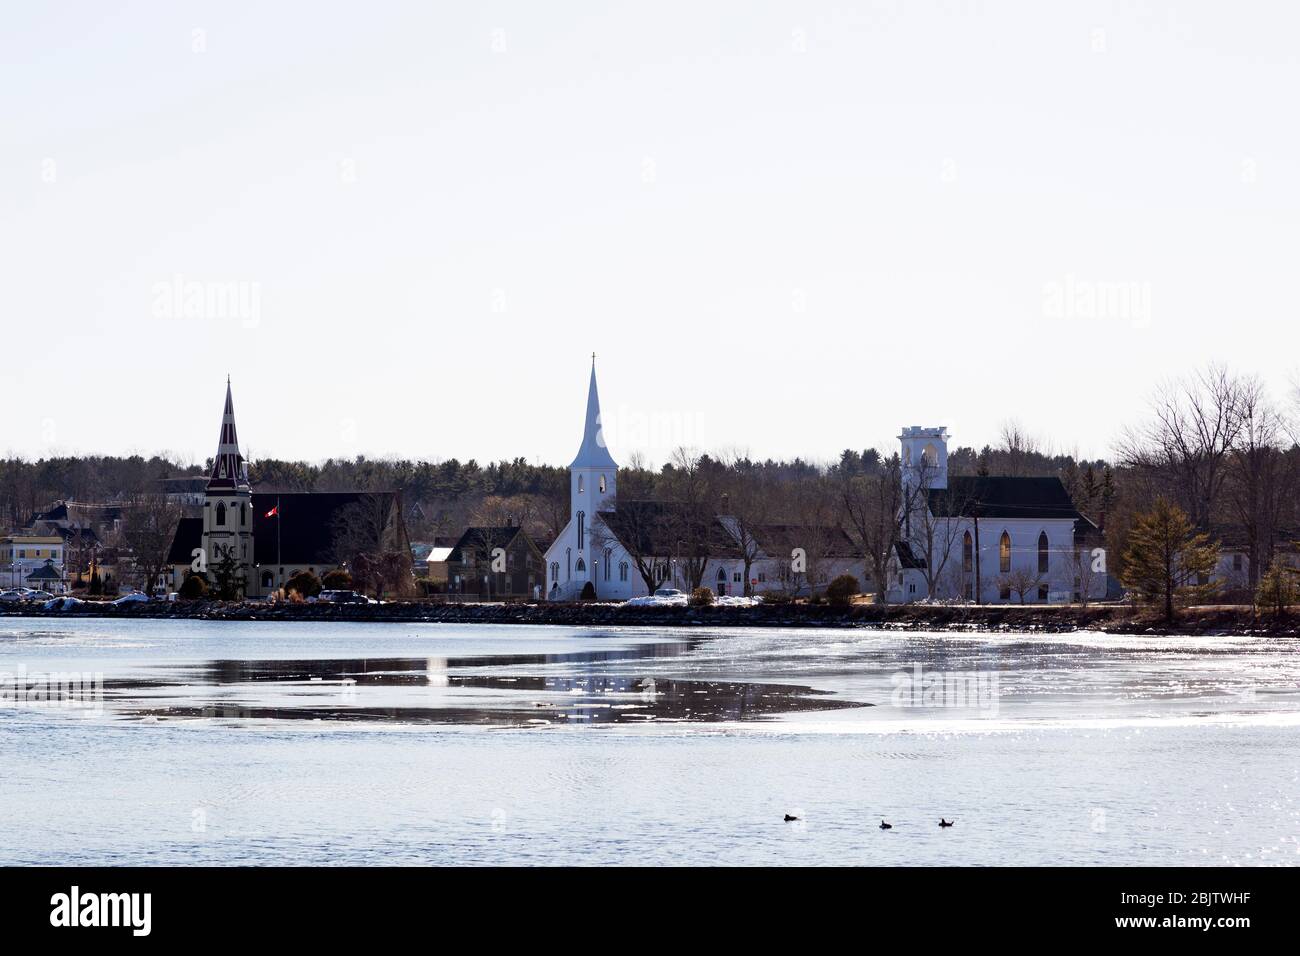 Vista delle tre chiese della Baia di Mahone in Nuova Scozia, Canada. Il è visto attraverso un ingresso parzialmente congelato in una giornata invernale. Foto Stock